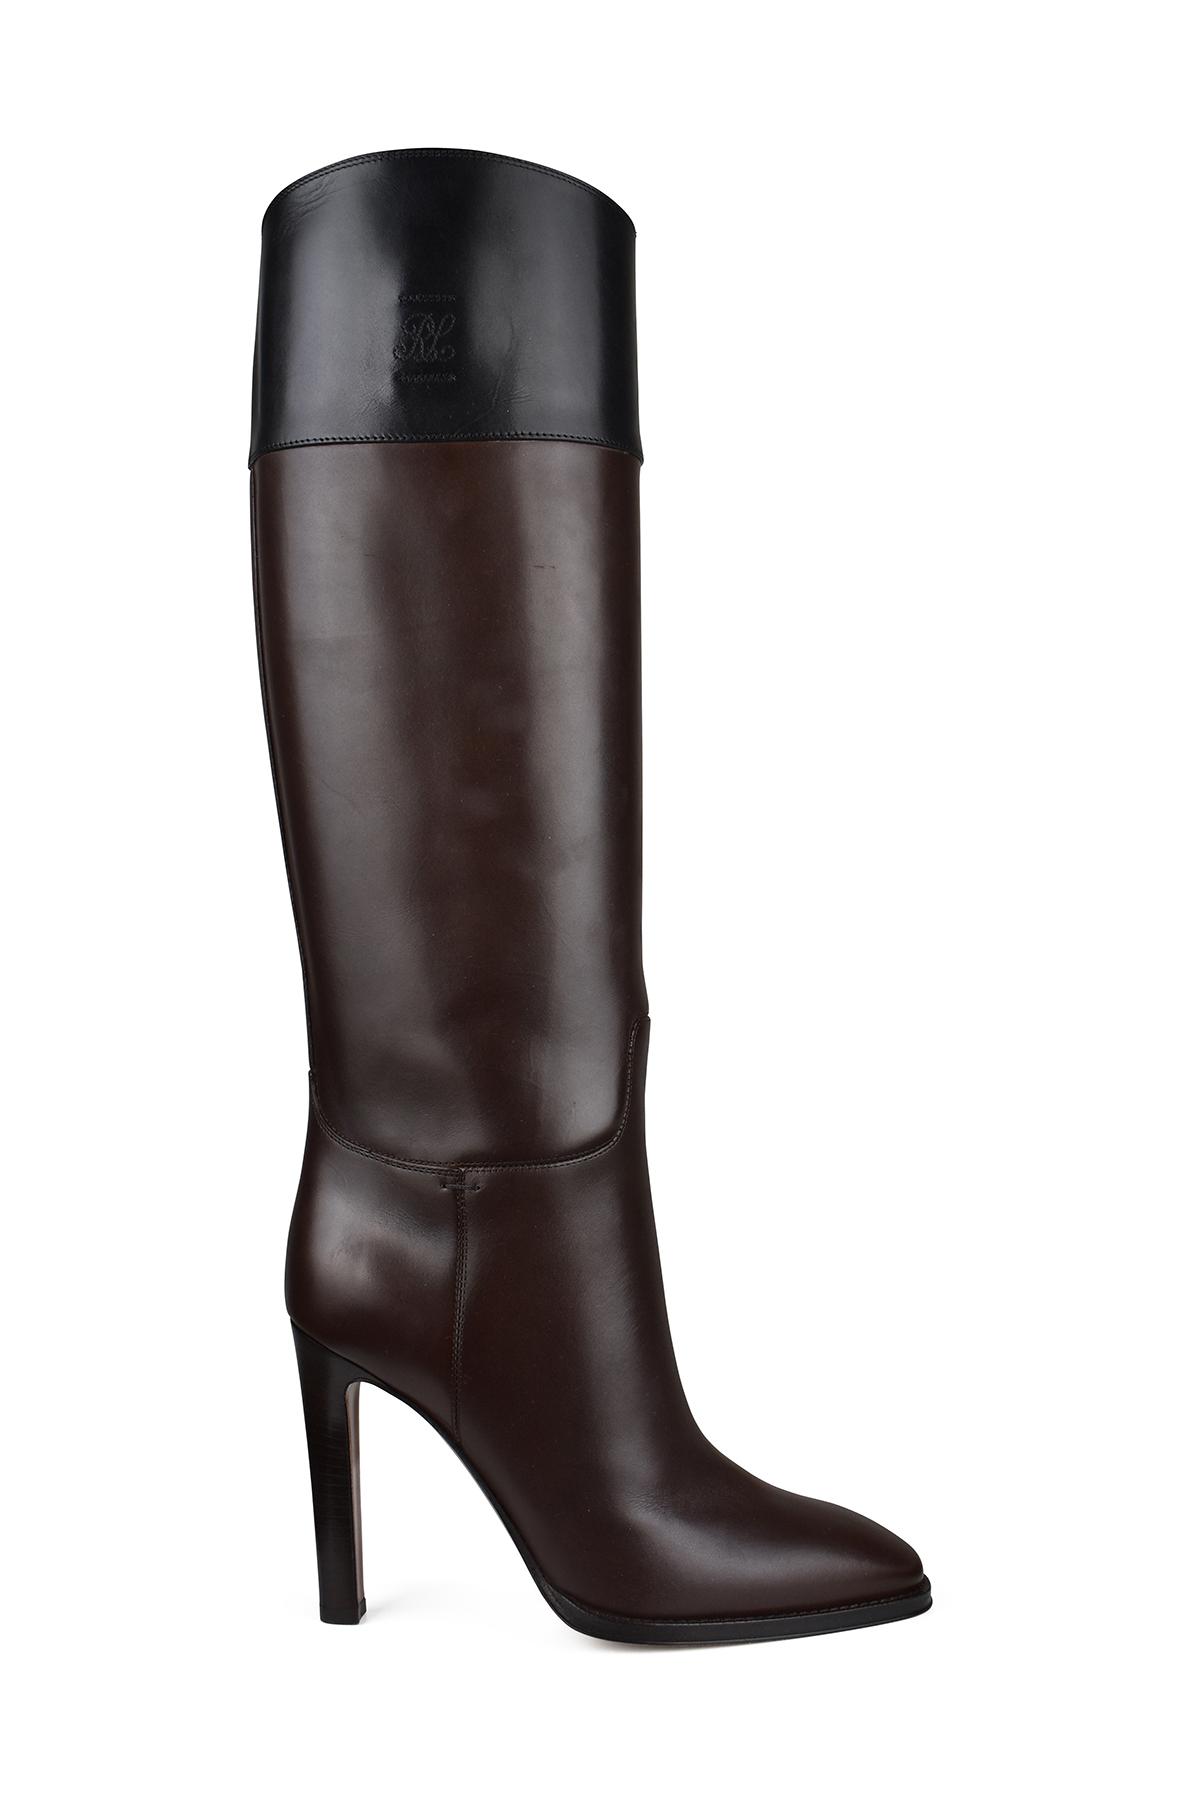 Ralph Lauren Fascia Boots in Black | Lyst